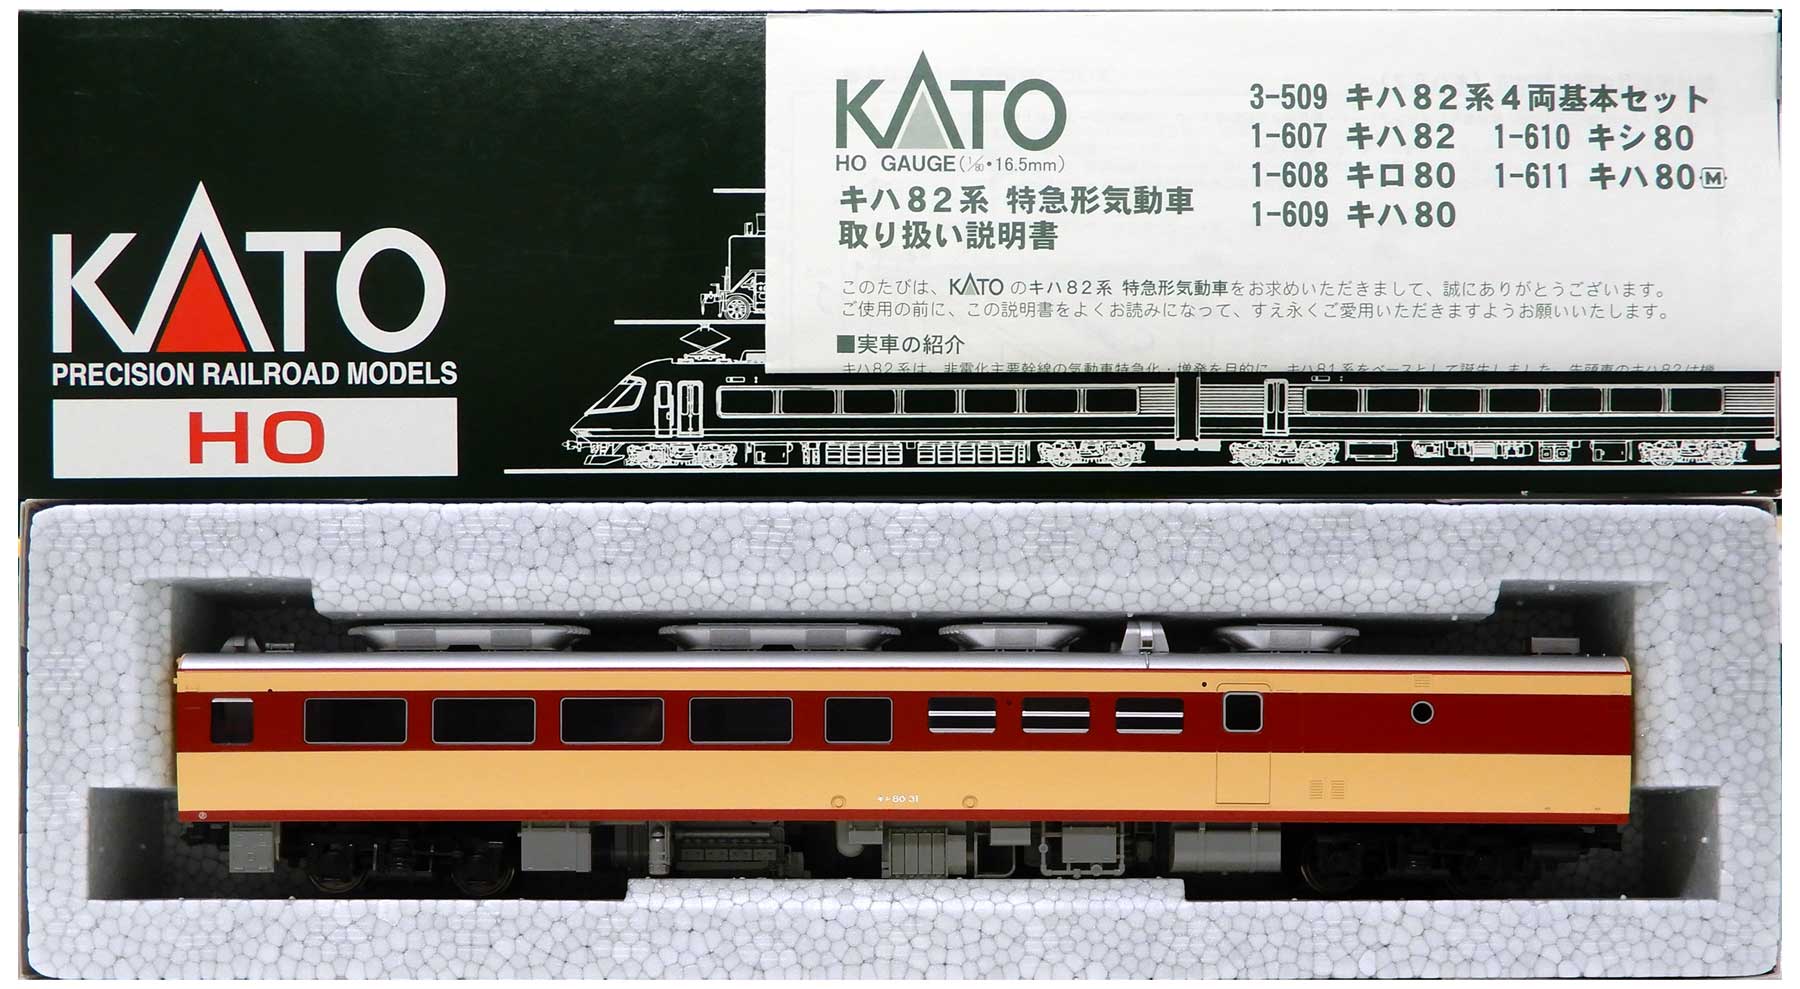 KATO HOゲージ キハ82系 基本4両セット キハ80.キシ80 計6両 DCC 